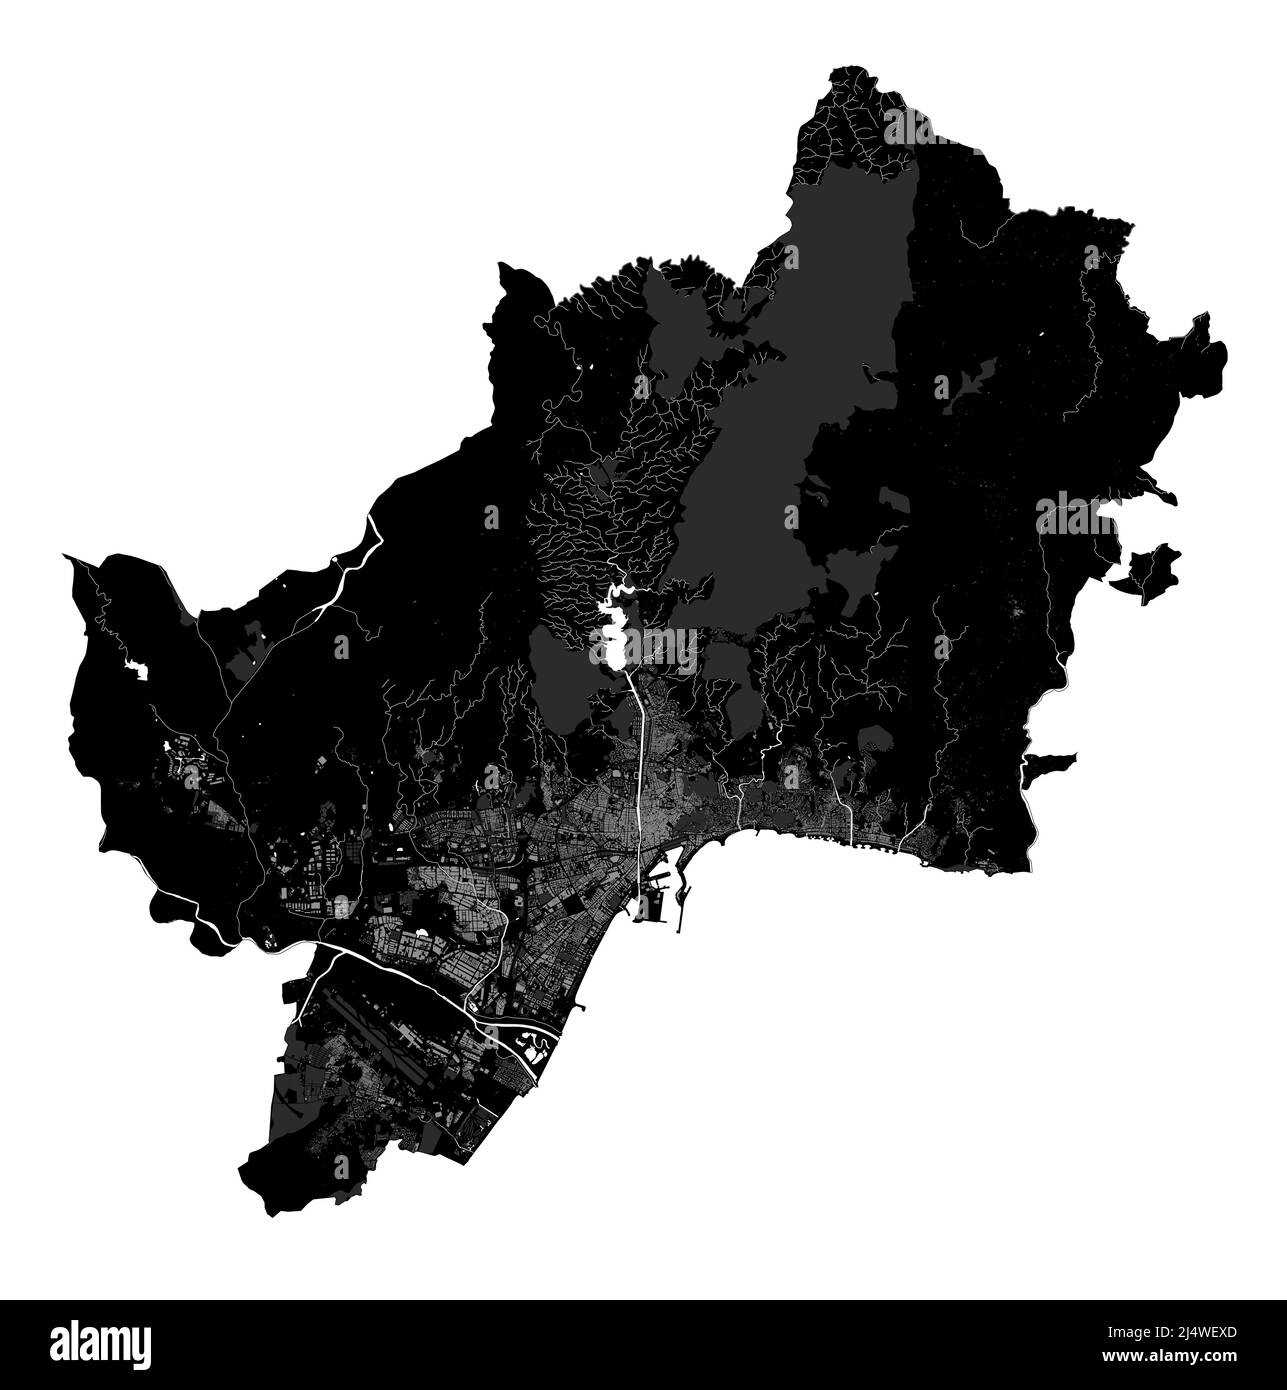 Karte von Malaga. Detaillierte Vektorkarte des Verwaltungsgebiets der Stadt Malaga. Blick auf das Stadtbild mit Postern und die Arie der Metropole. Schwarzes Land mit weißen Straßen, Straßen und Stock Vektor